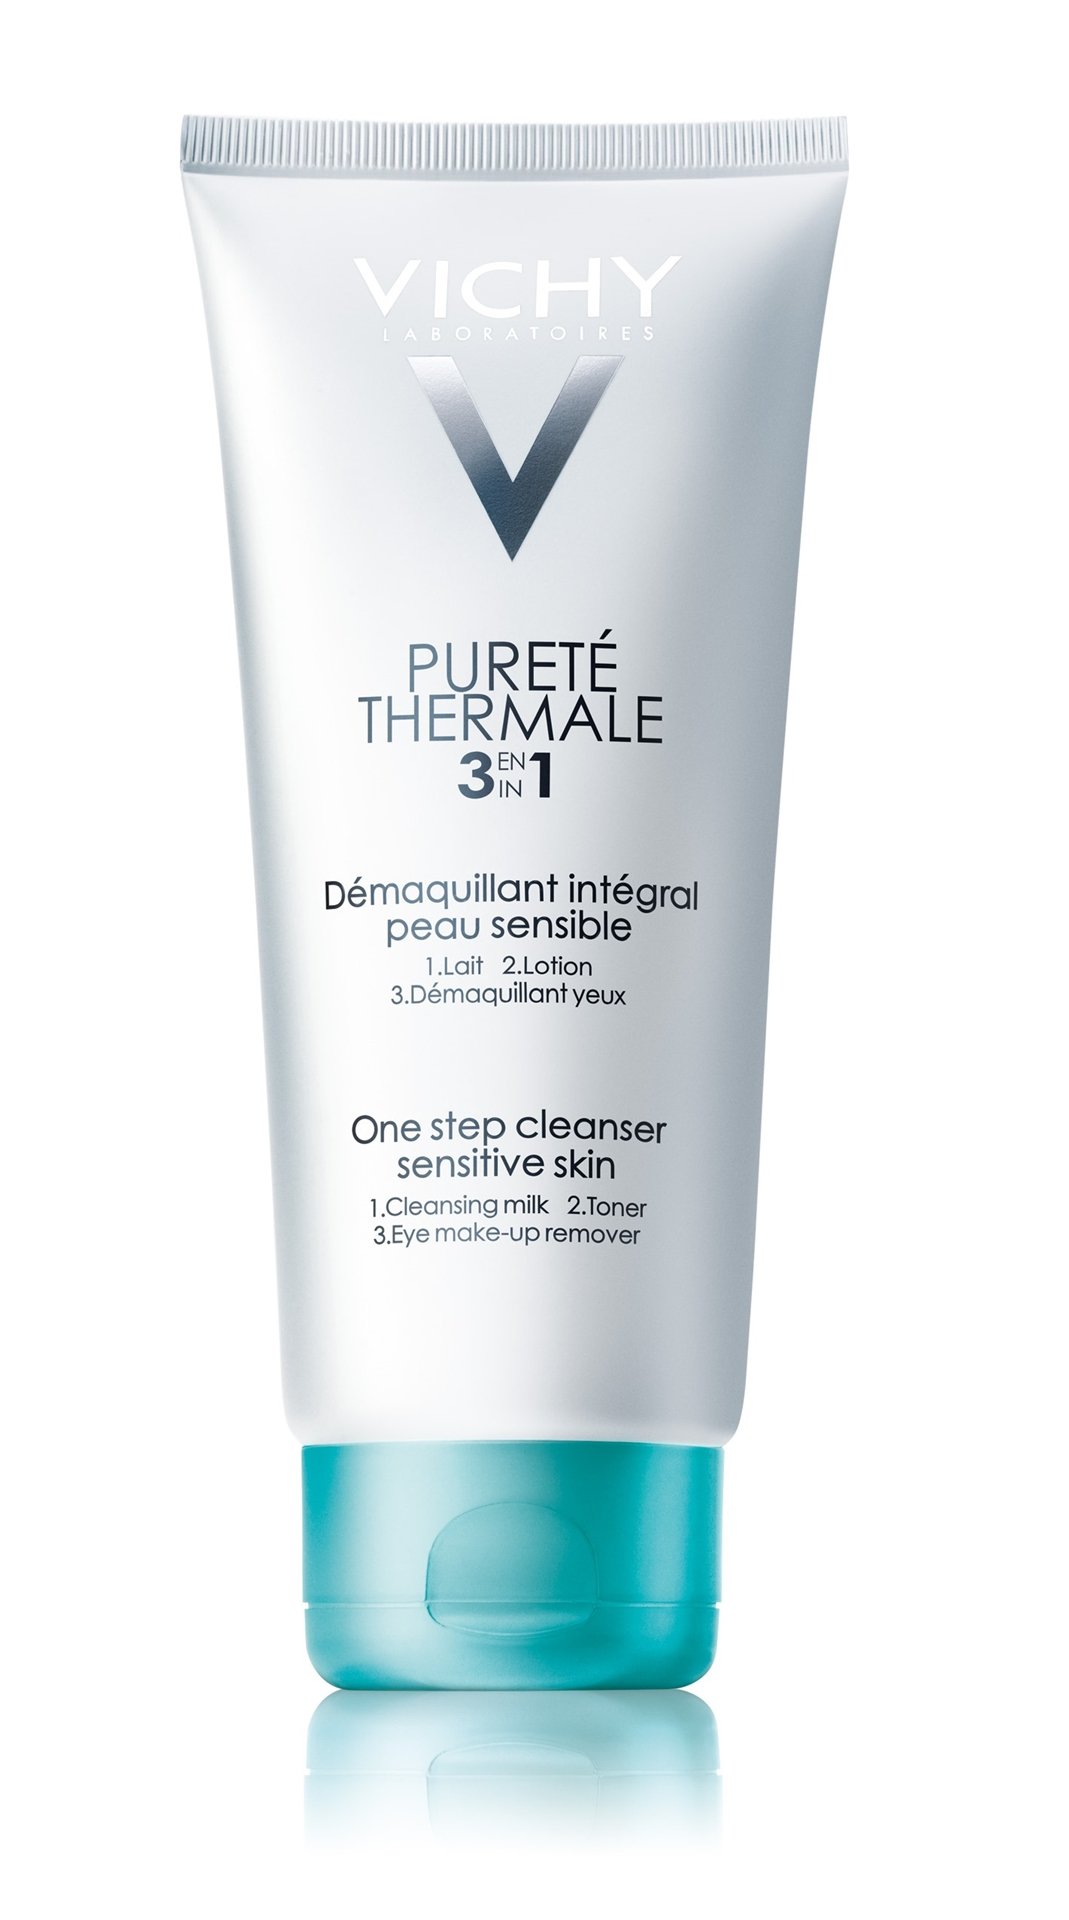 פיורטה טרמל אינטגרל וישי  תחליב לניקוי מושלם של הפנים והעיניים לכל סוגי העור Vichy Purete Thermale 3 In 1